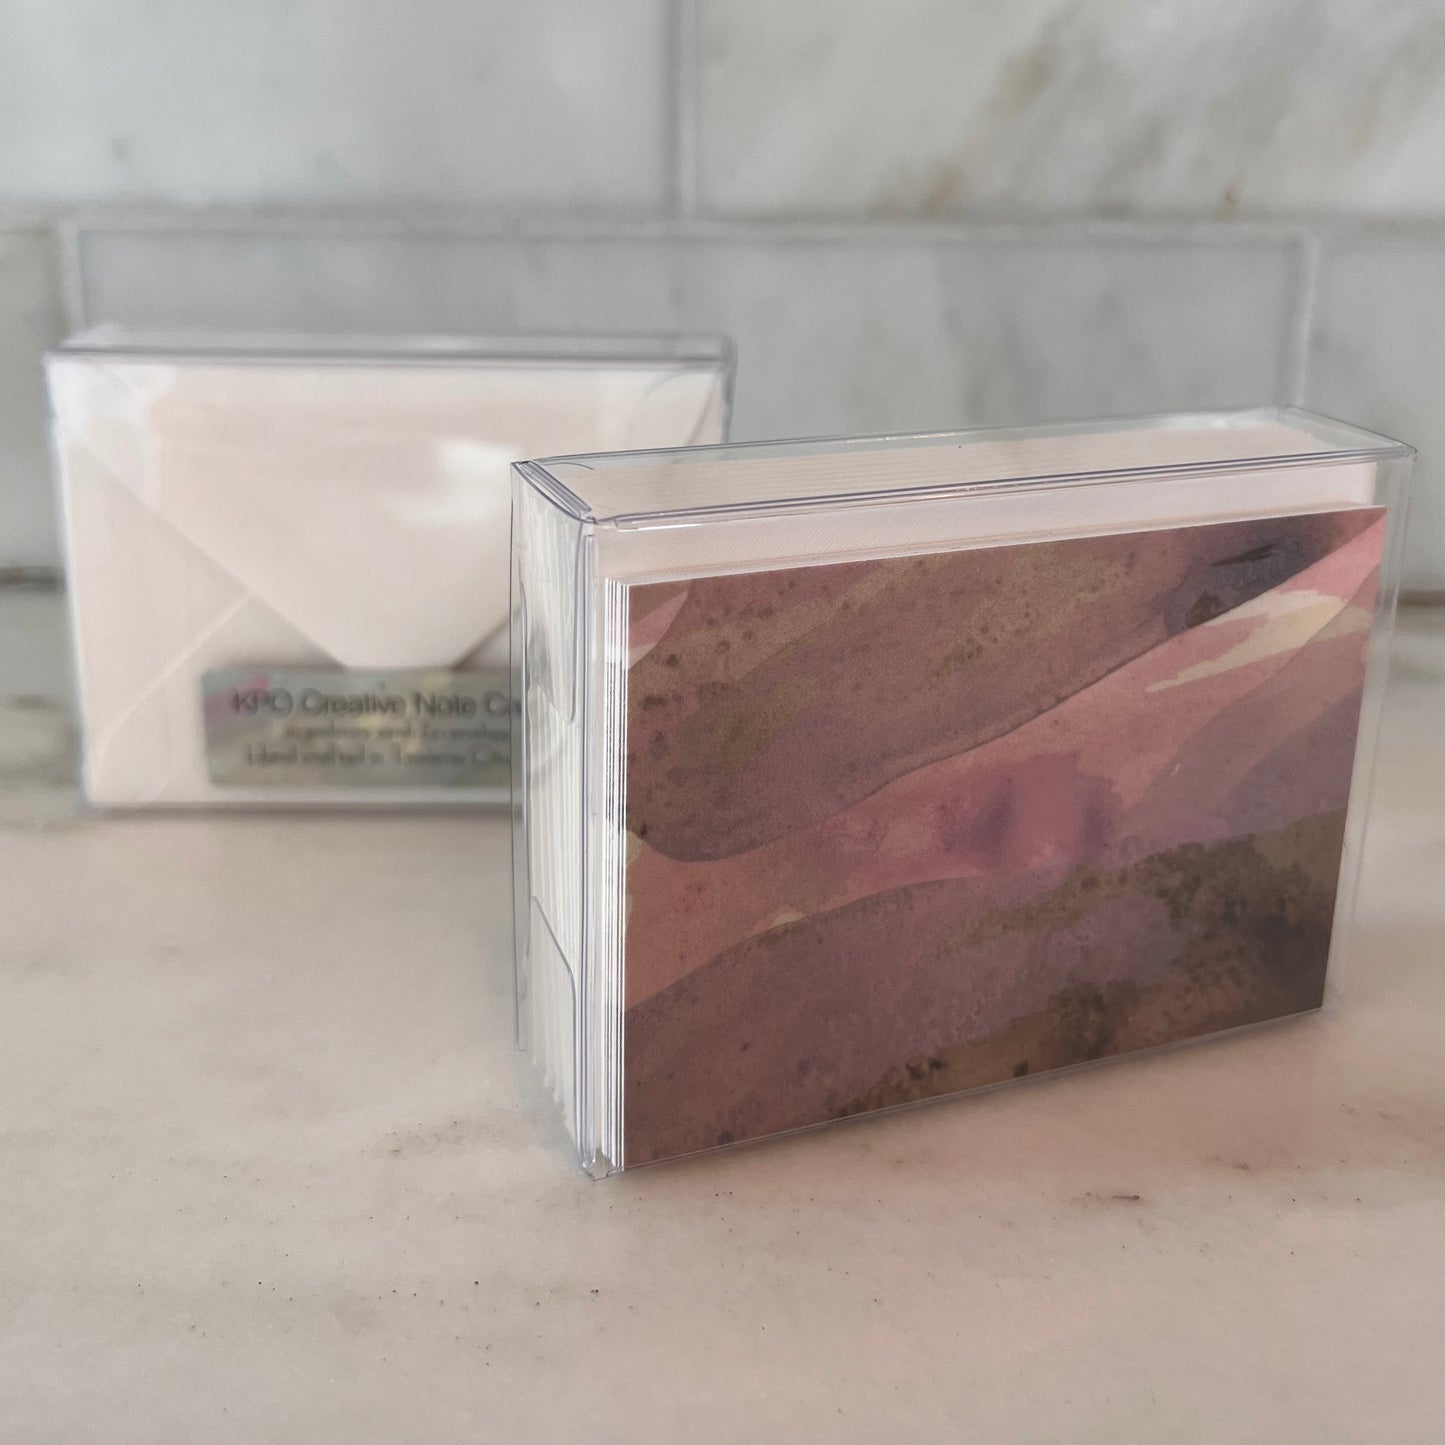 Set of 10 Original Enclosure Note Cards by Kristy Kurjan